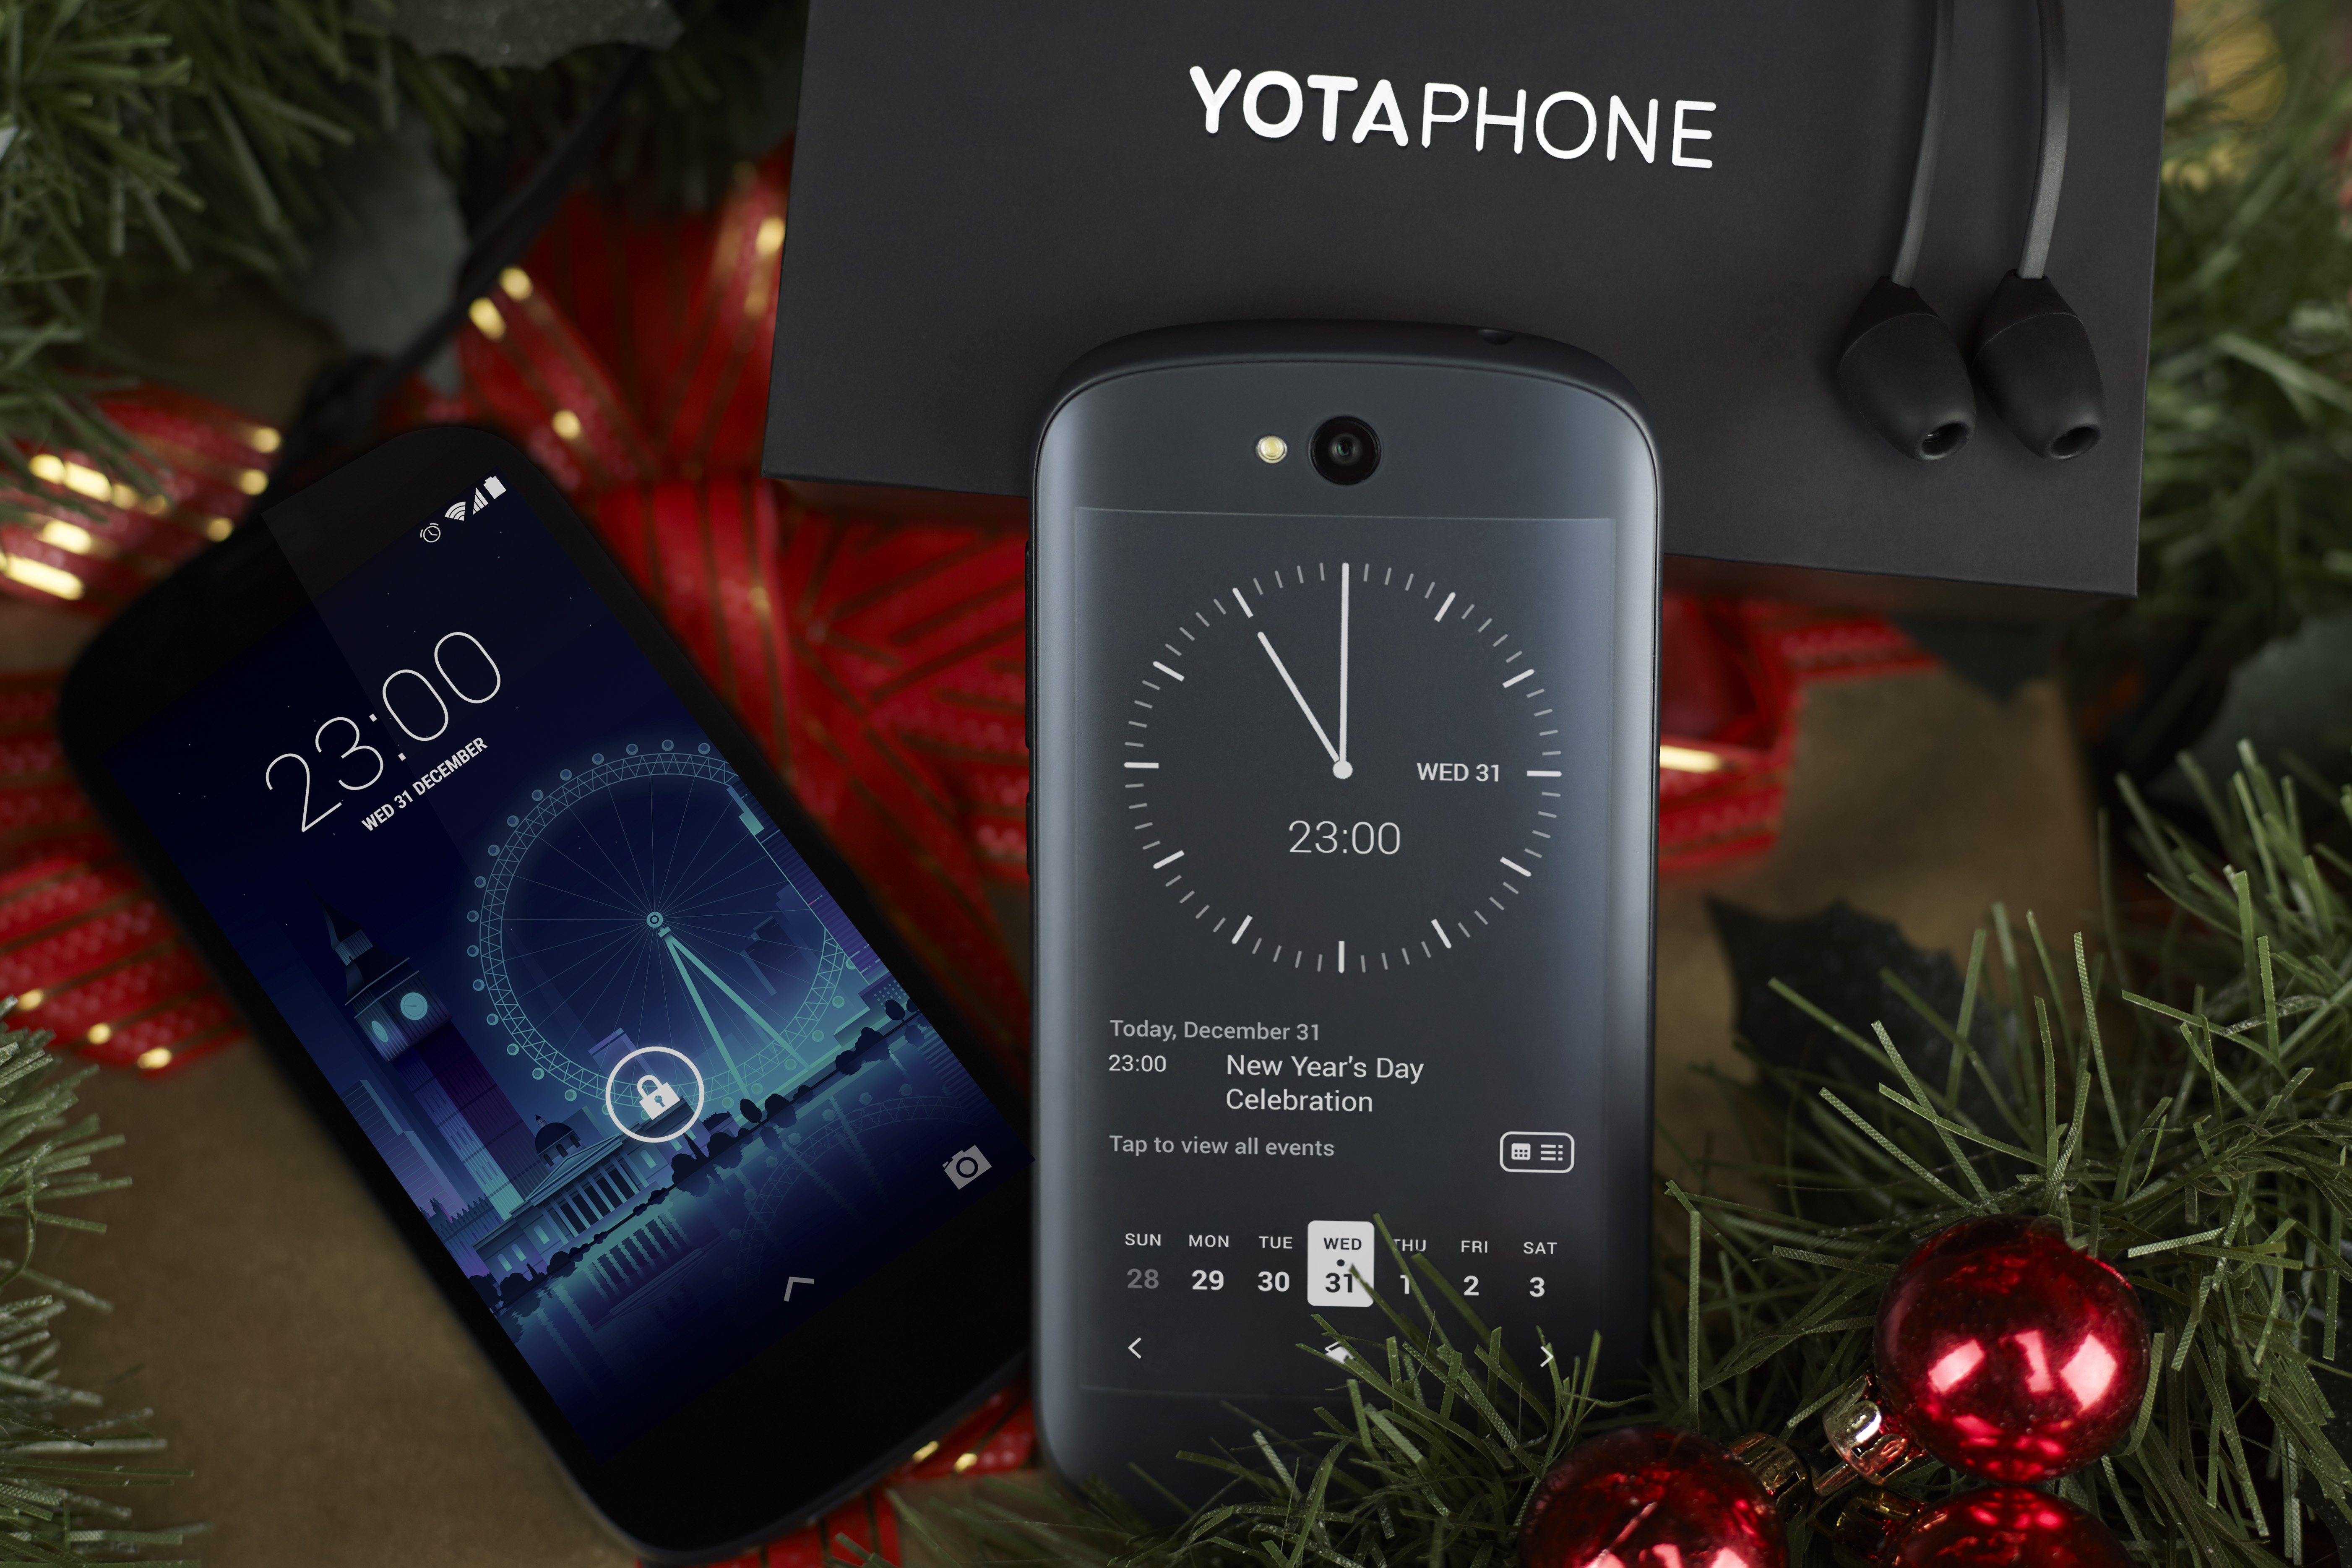 yotaphone 2发布:首款双屏手机售价4888元